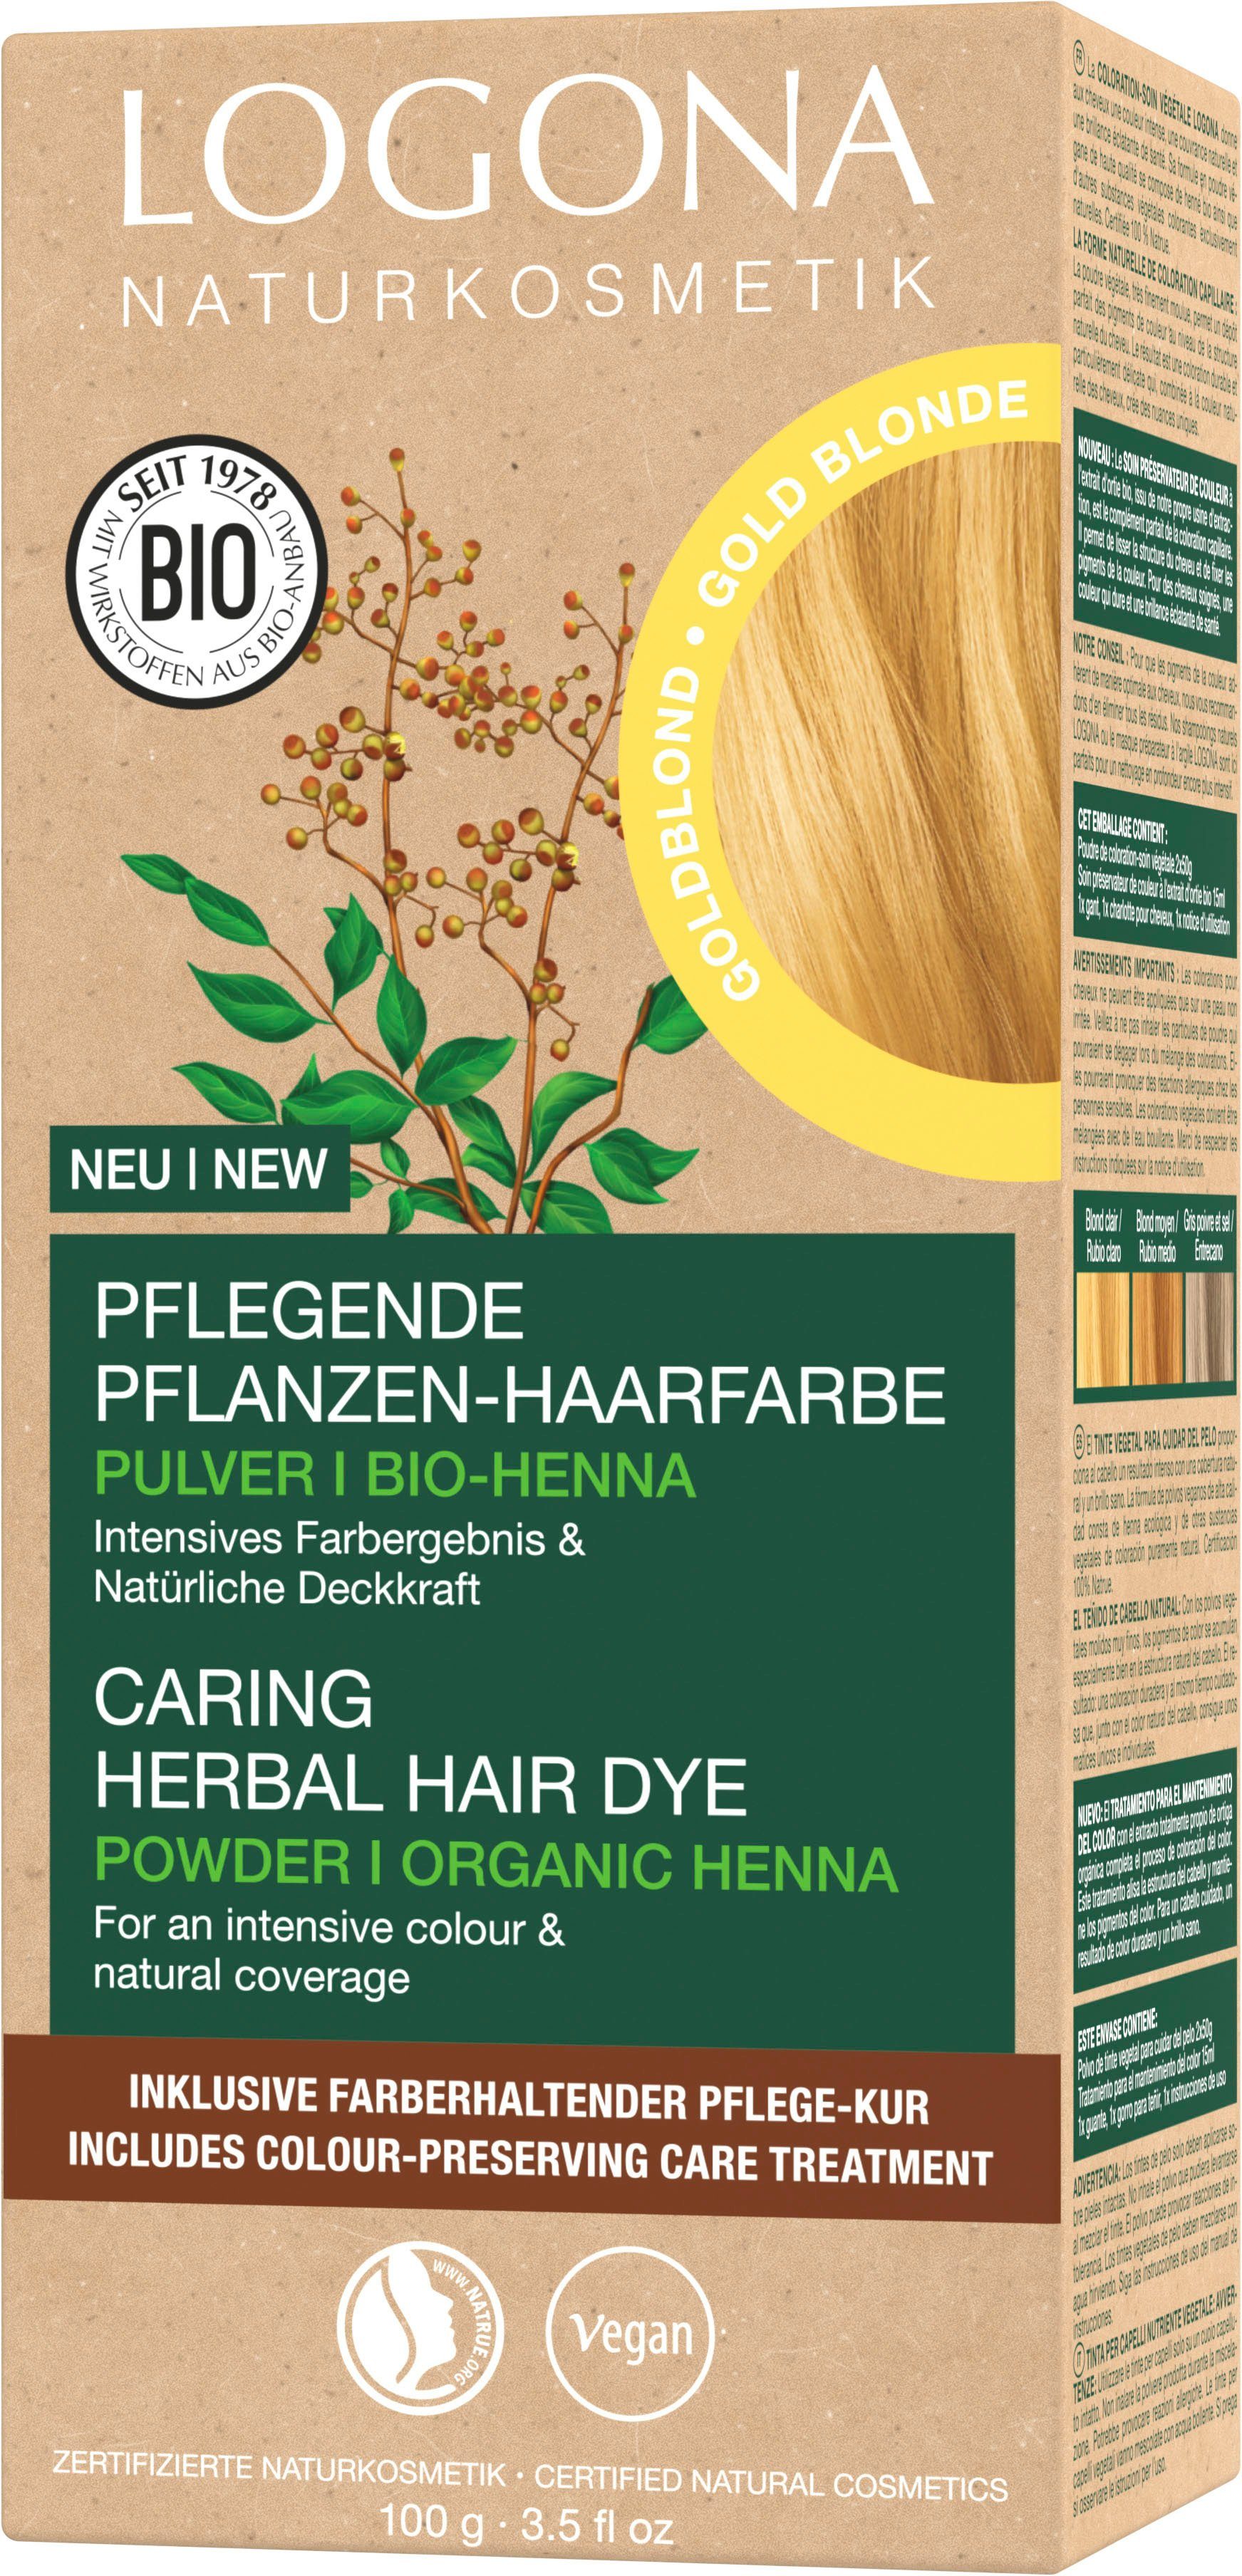 Goldblond Pulver 01 Haarfarbe Pflanzen-Haarfarbe LOGONA